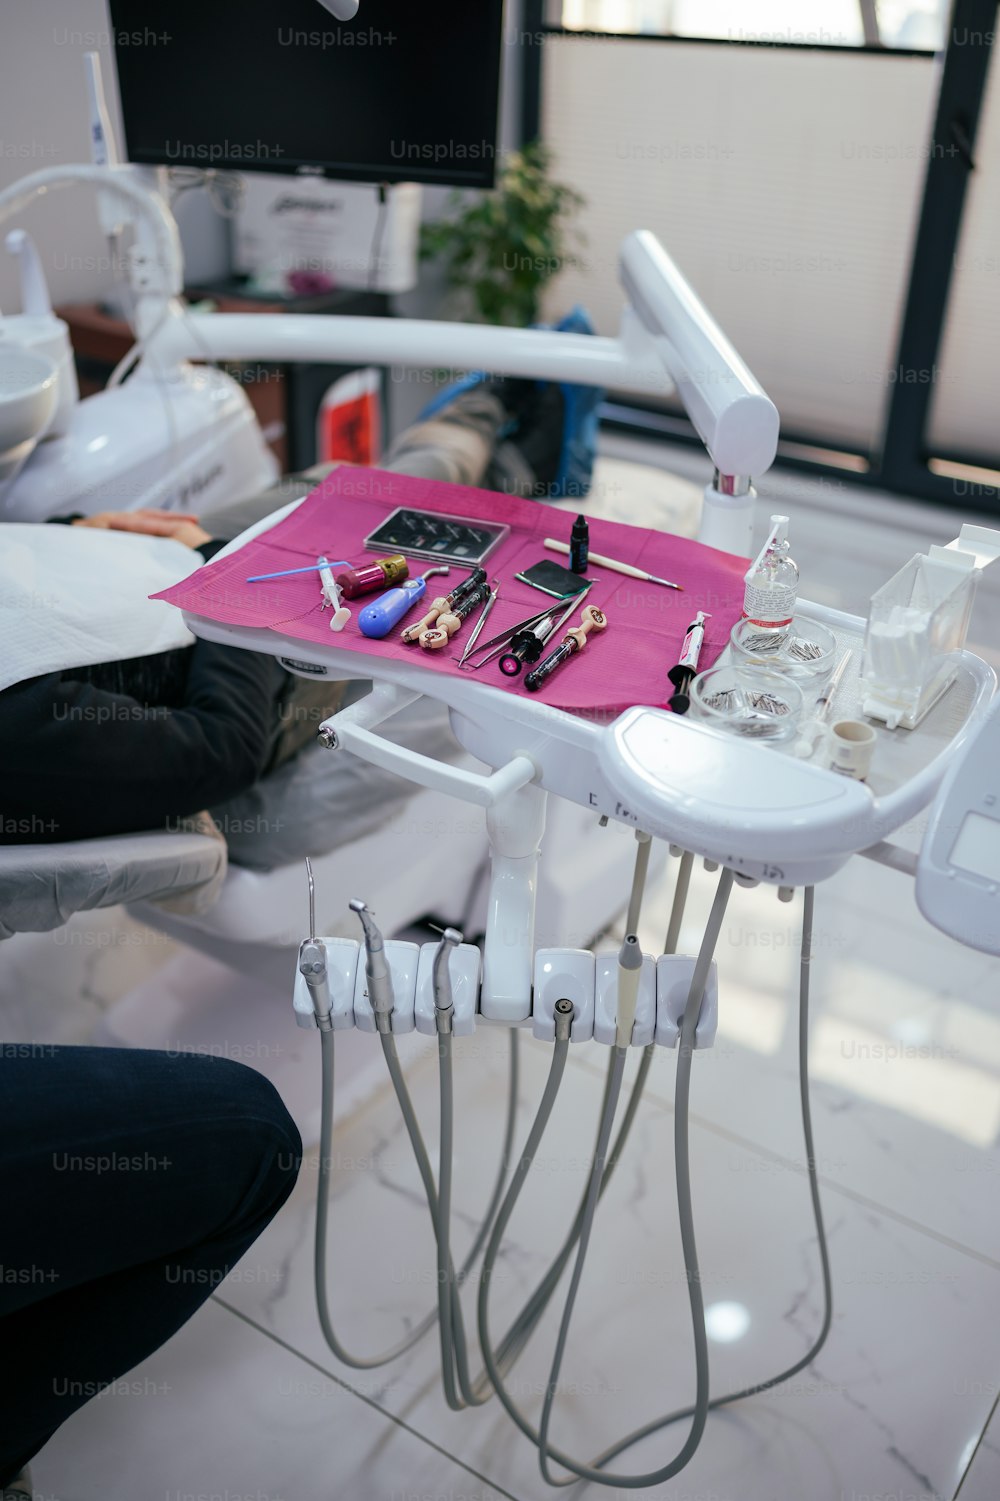 una silla de dentista con una bandeja de herramientas